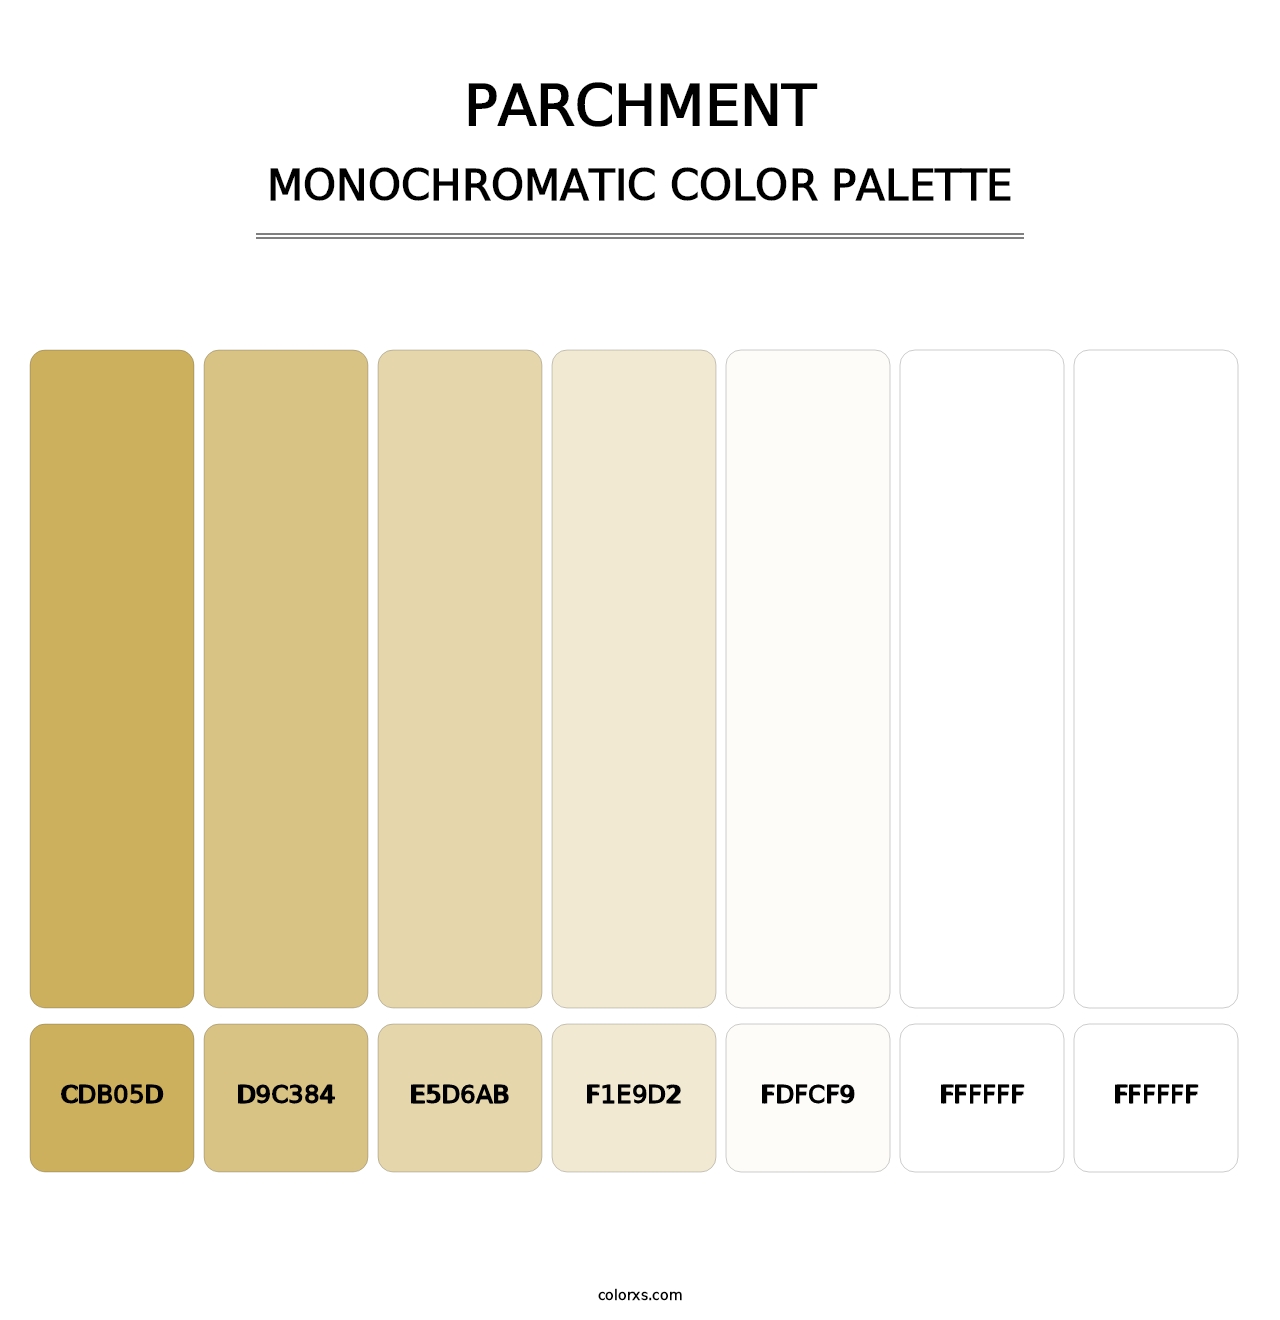 Parchment - Monochromatic Color Palette